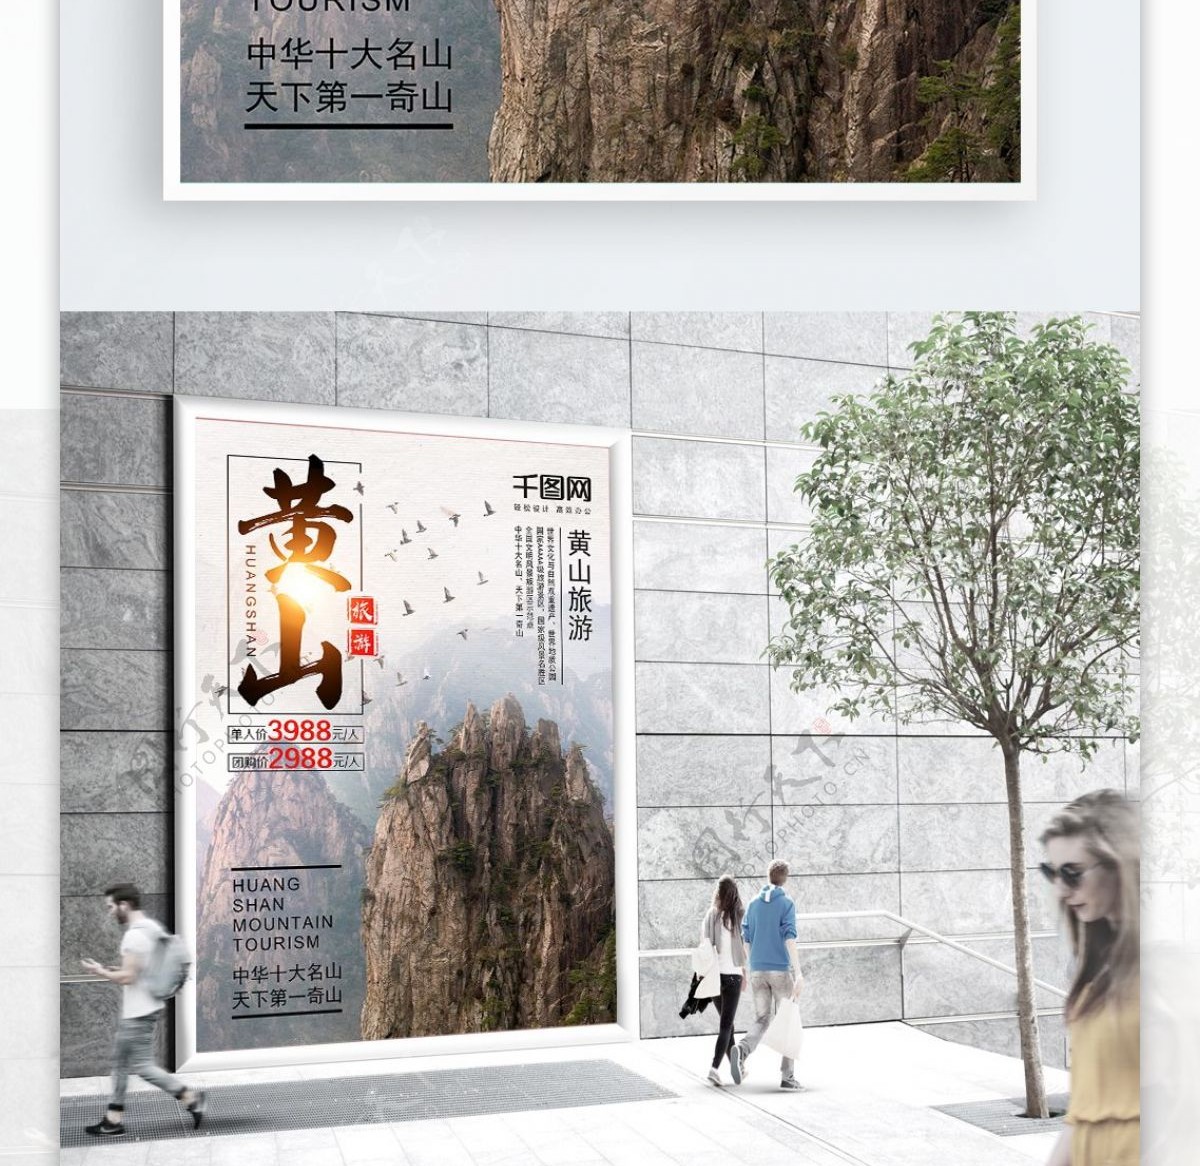 简约时尚商务促销黄山旅游海报